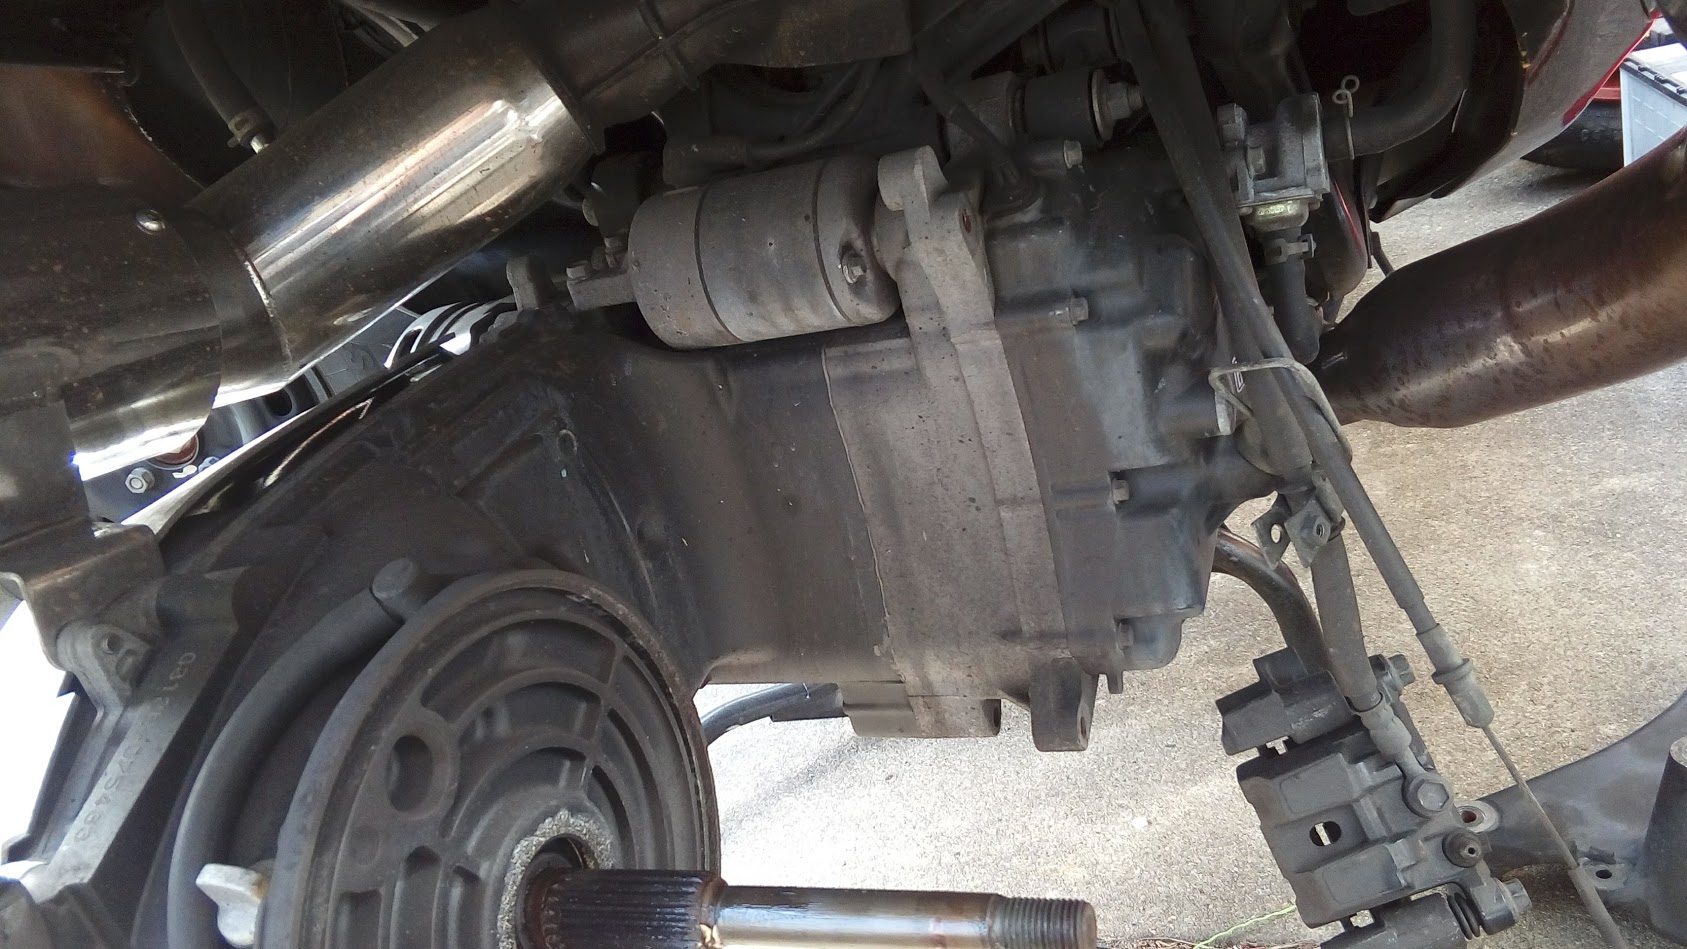 マジェスティ250のセルモーター交換 - スクーターロードサービス出張パンク修理と出張タイヤ交換